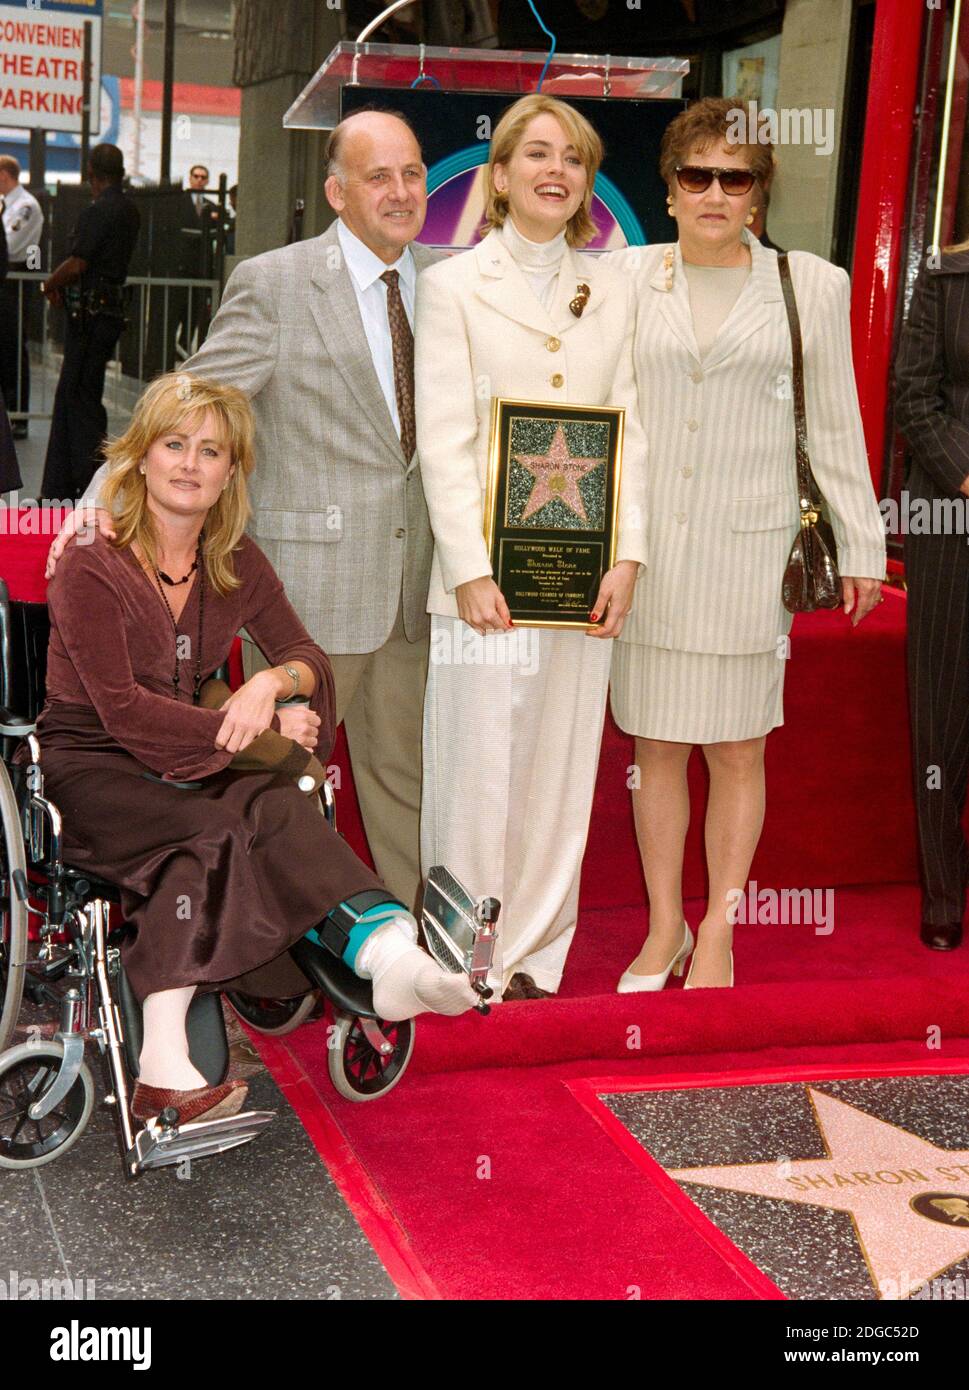 ARCHIV: LOS ANGELES, CA. 16. November 1995: Schauspielerin Sharon Stone mit ihren Eltern & Schwester Kelly Stone, als sie auf dem Hollywood Walk of Fame in Los Angeles mit einem Stern geehrt wird. Datei Foto © Paul Smith/Featureflash Stockfoto